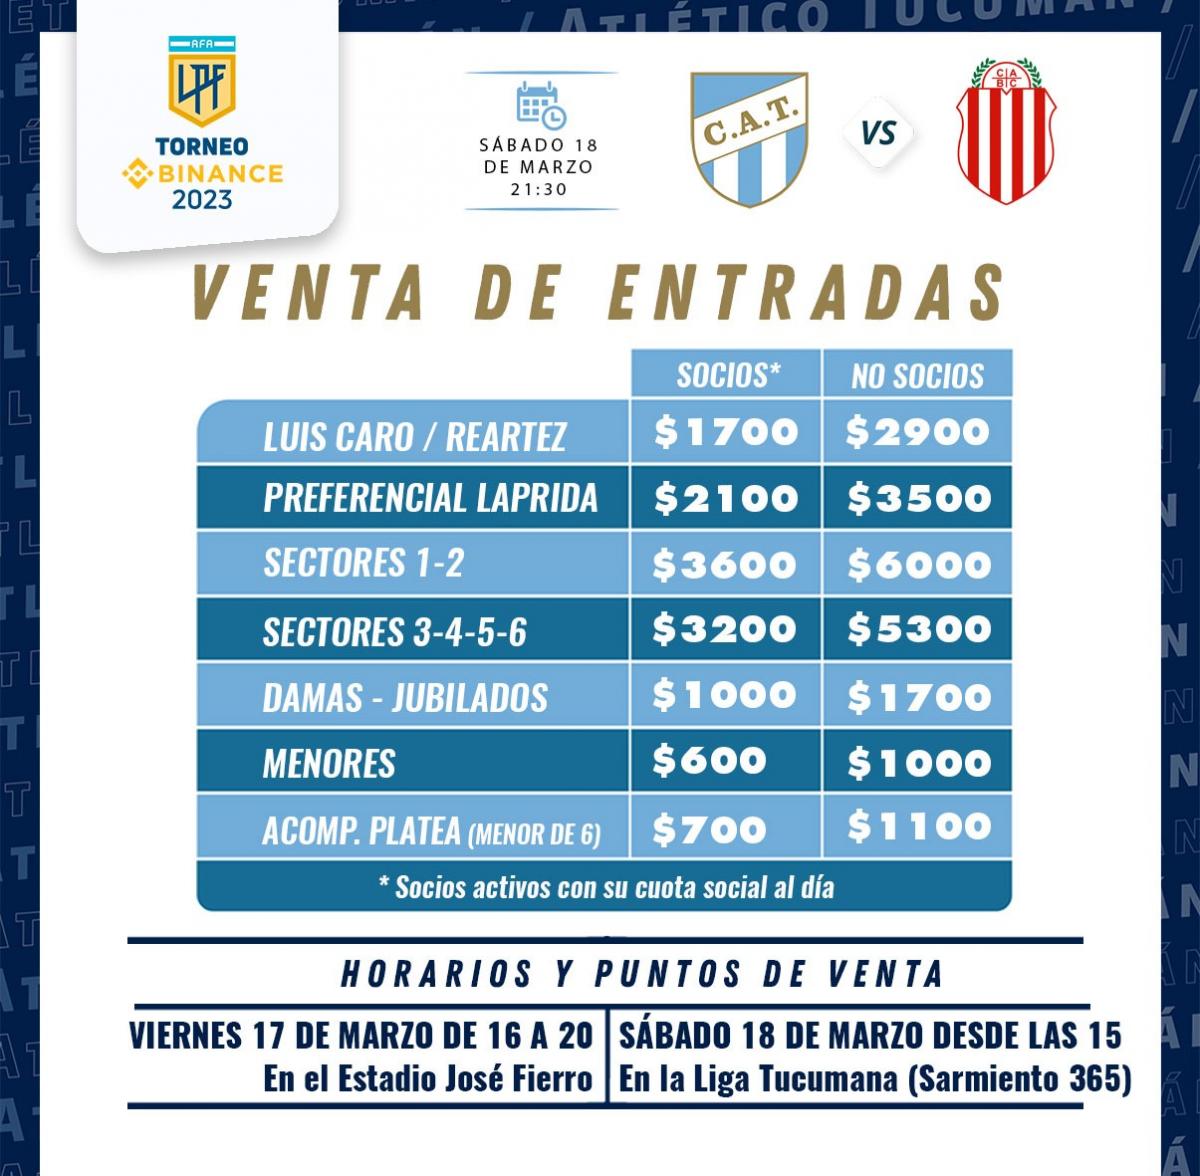 ¿Cuándo se venderán las entradas para el partido entre Atlético Tucumán y Barracas?